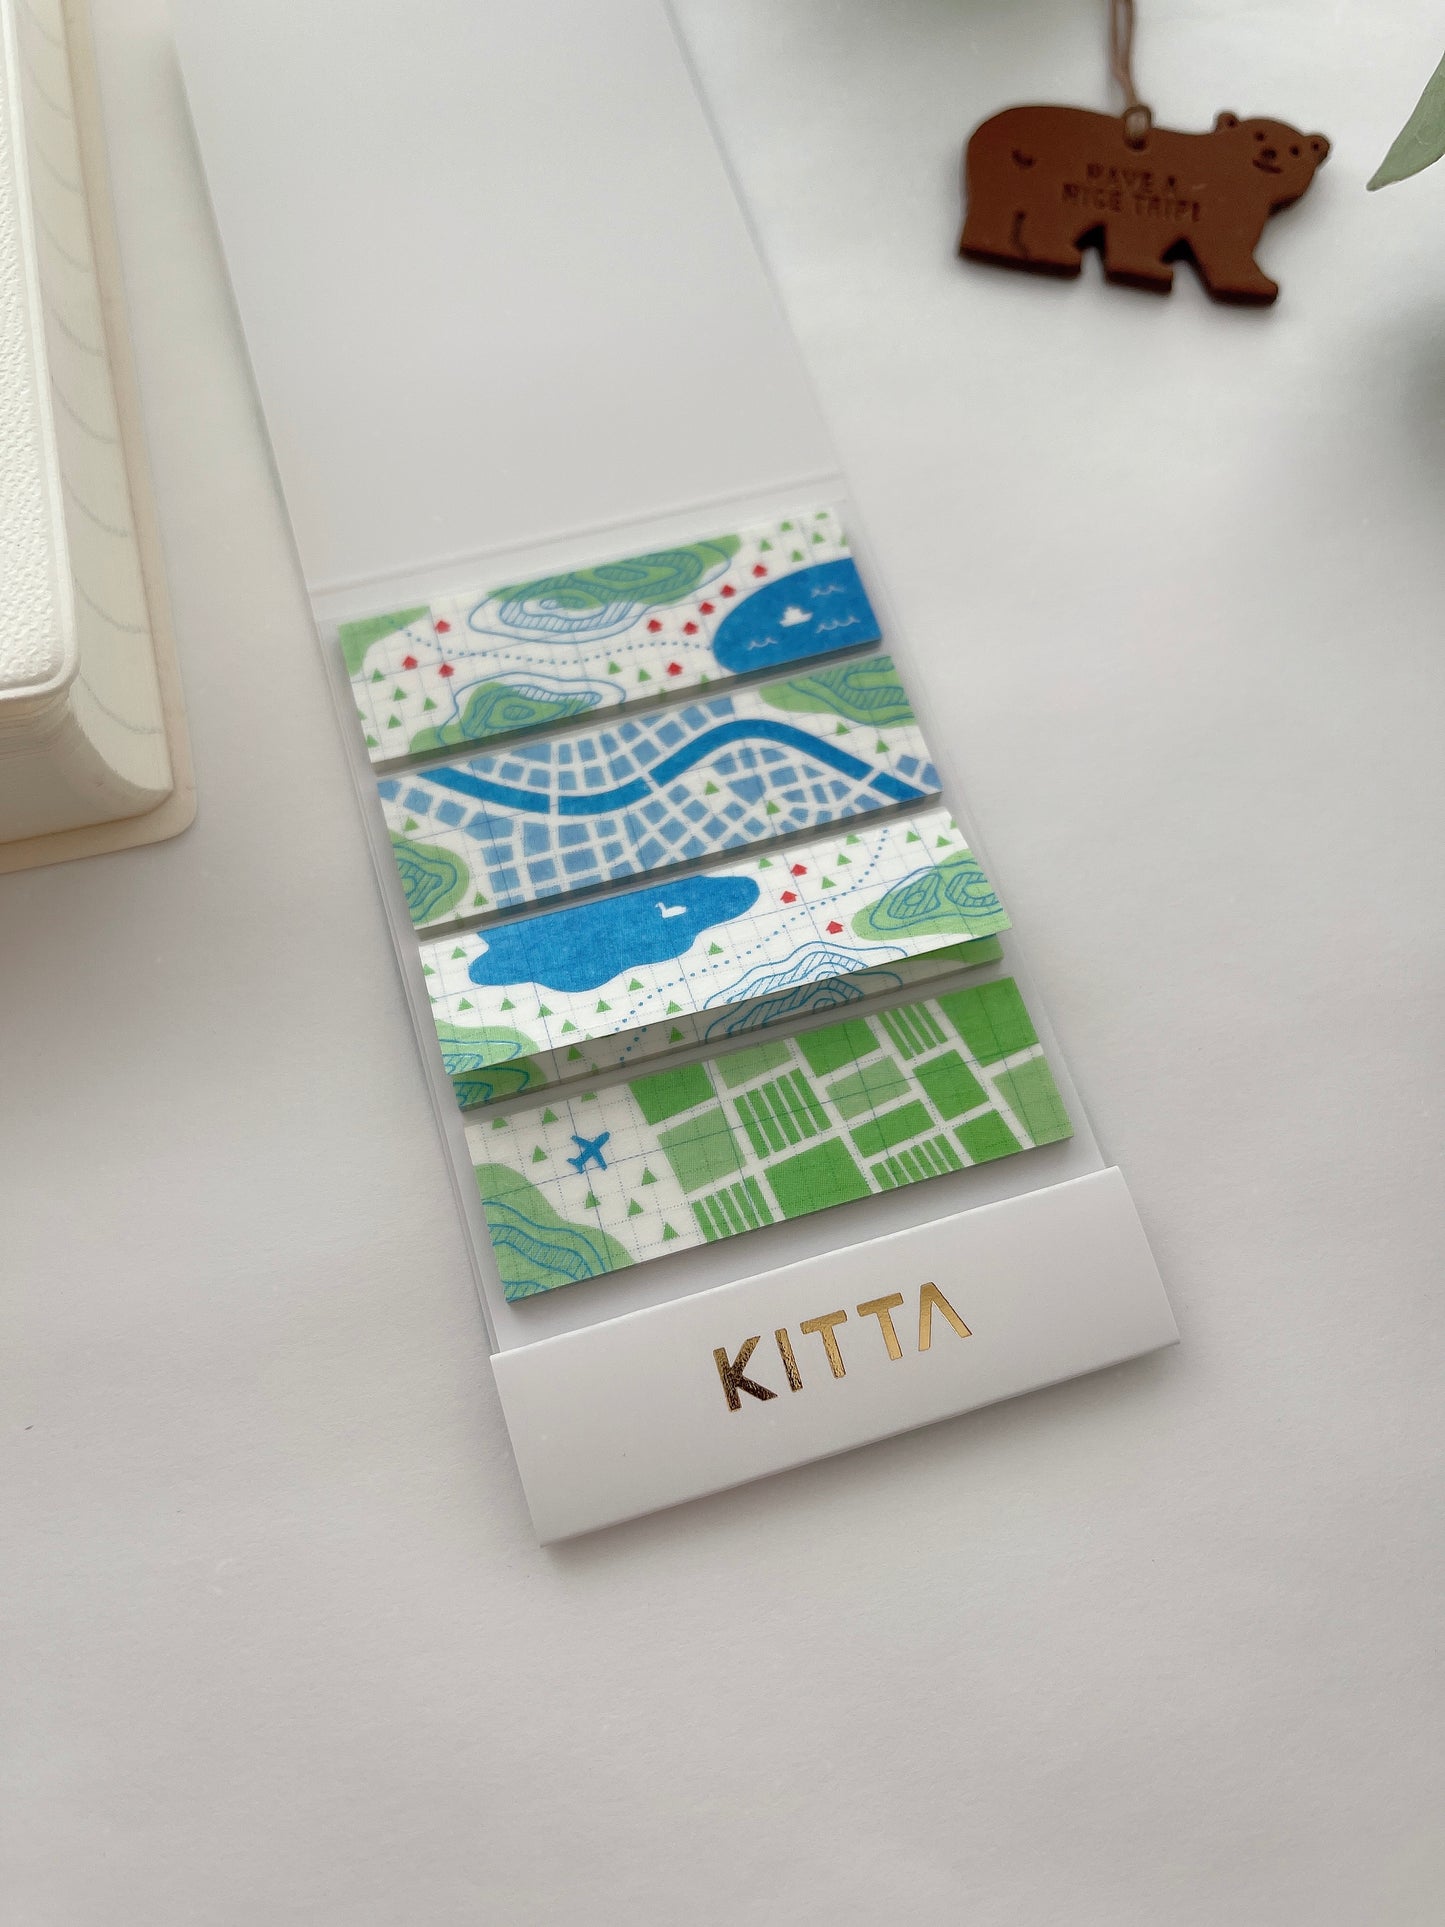 KITTA On-the-go Washi Tapes | KITH009